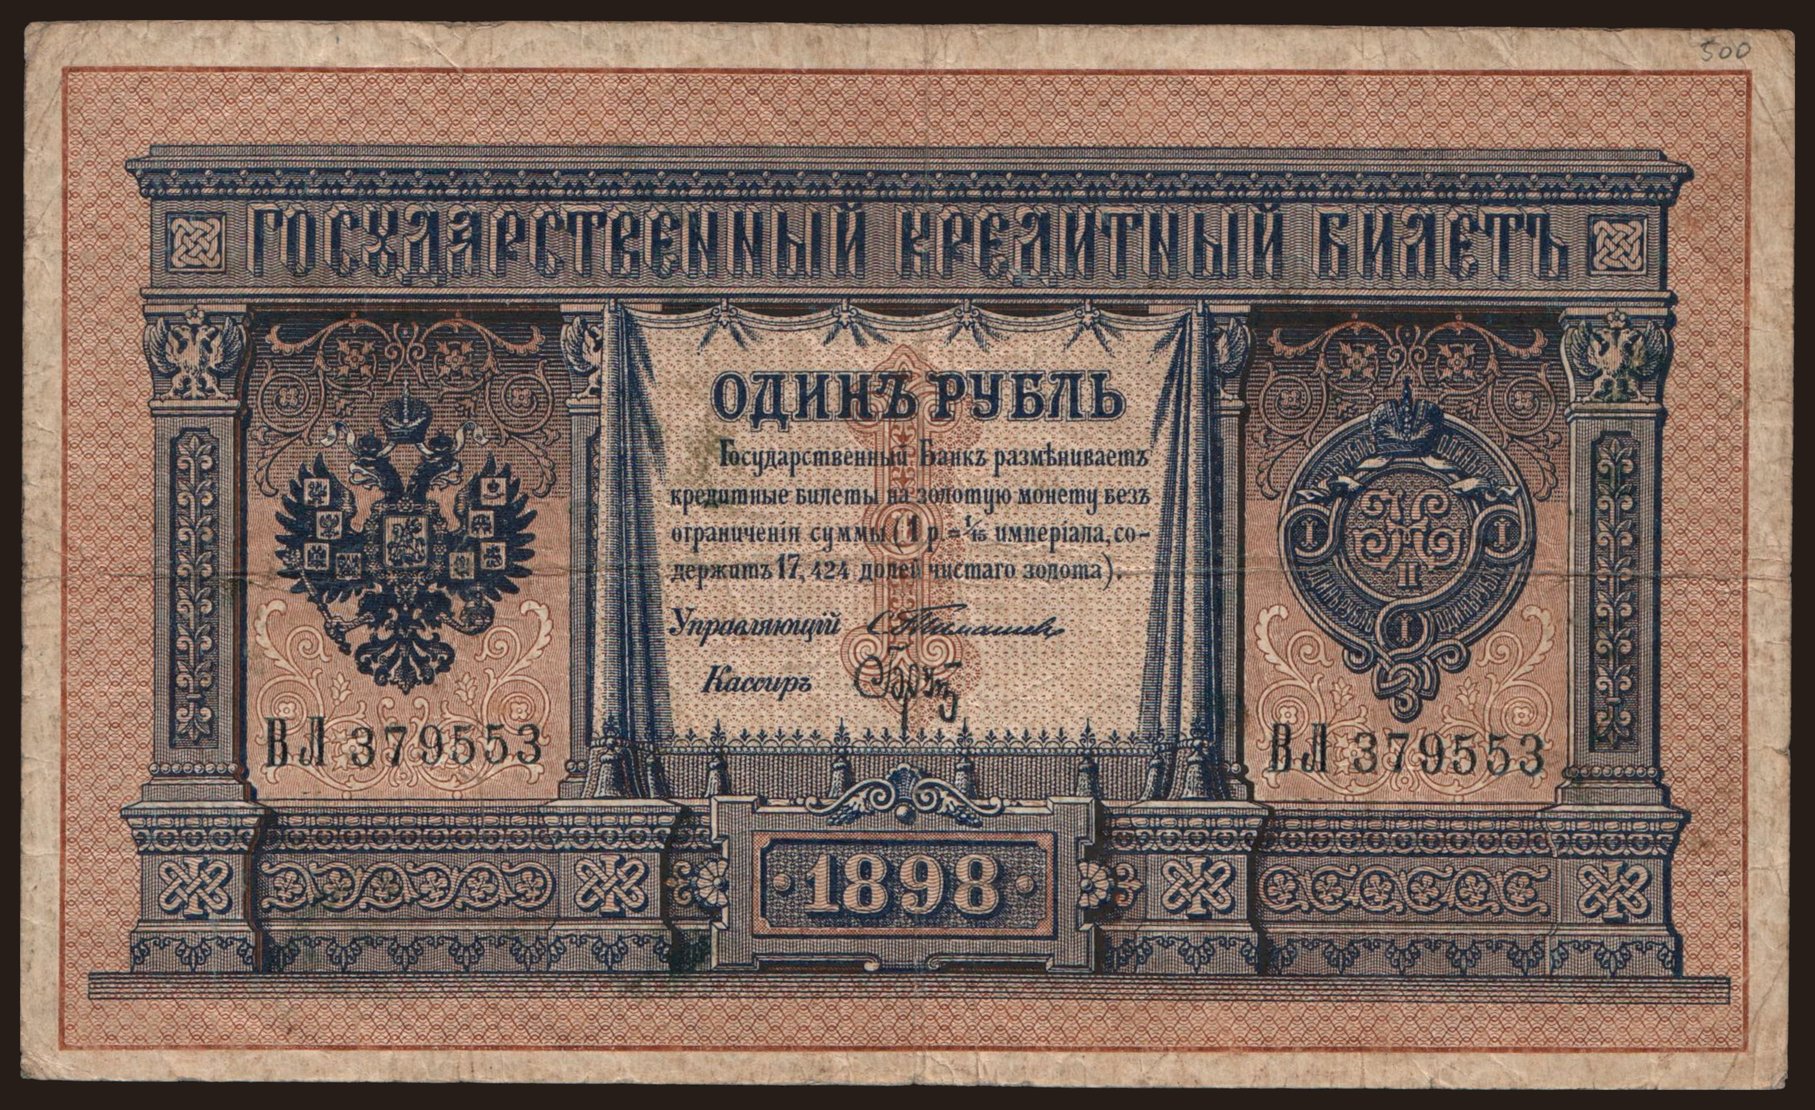 1 rubel, 1898, Timashev/ Brut